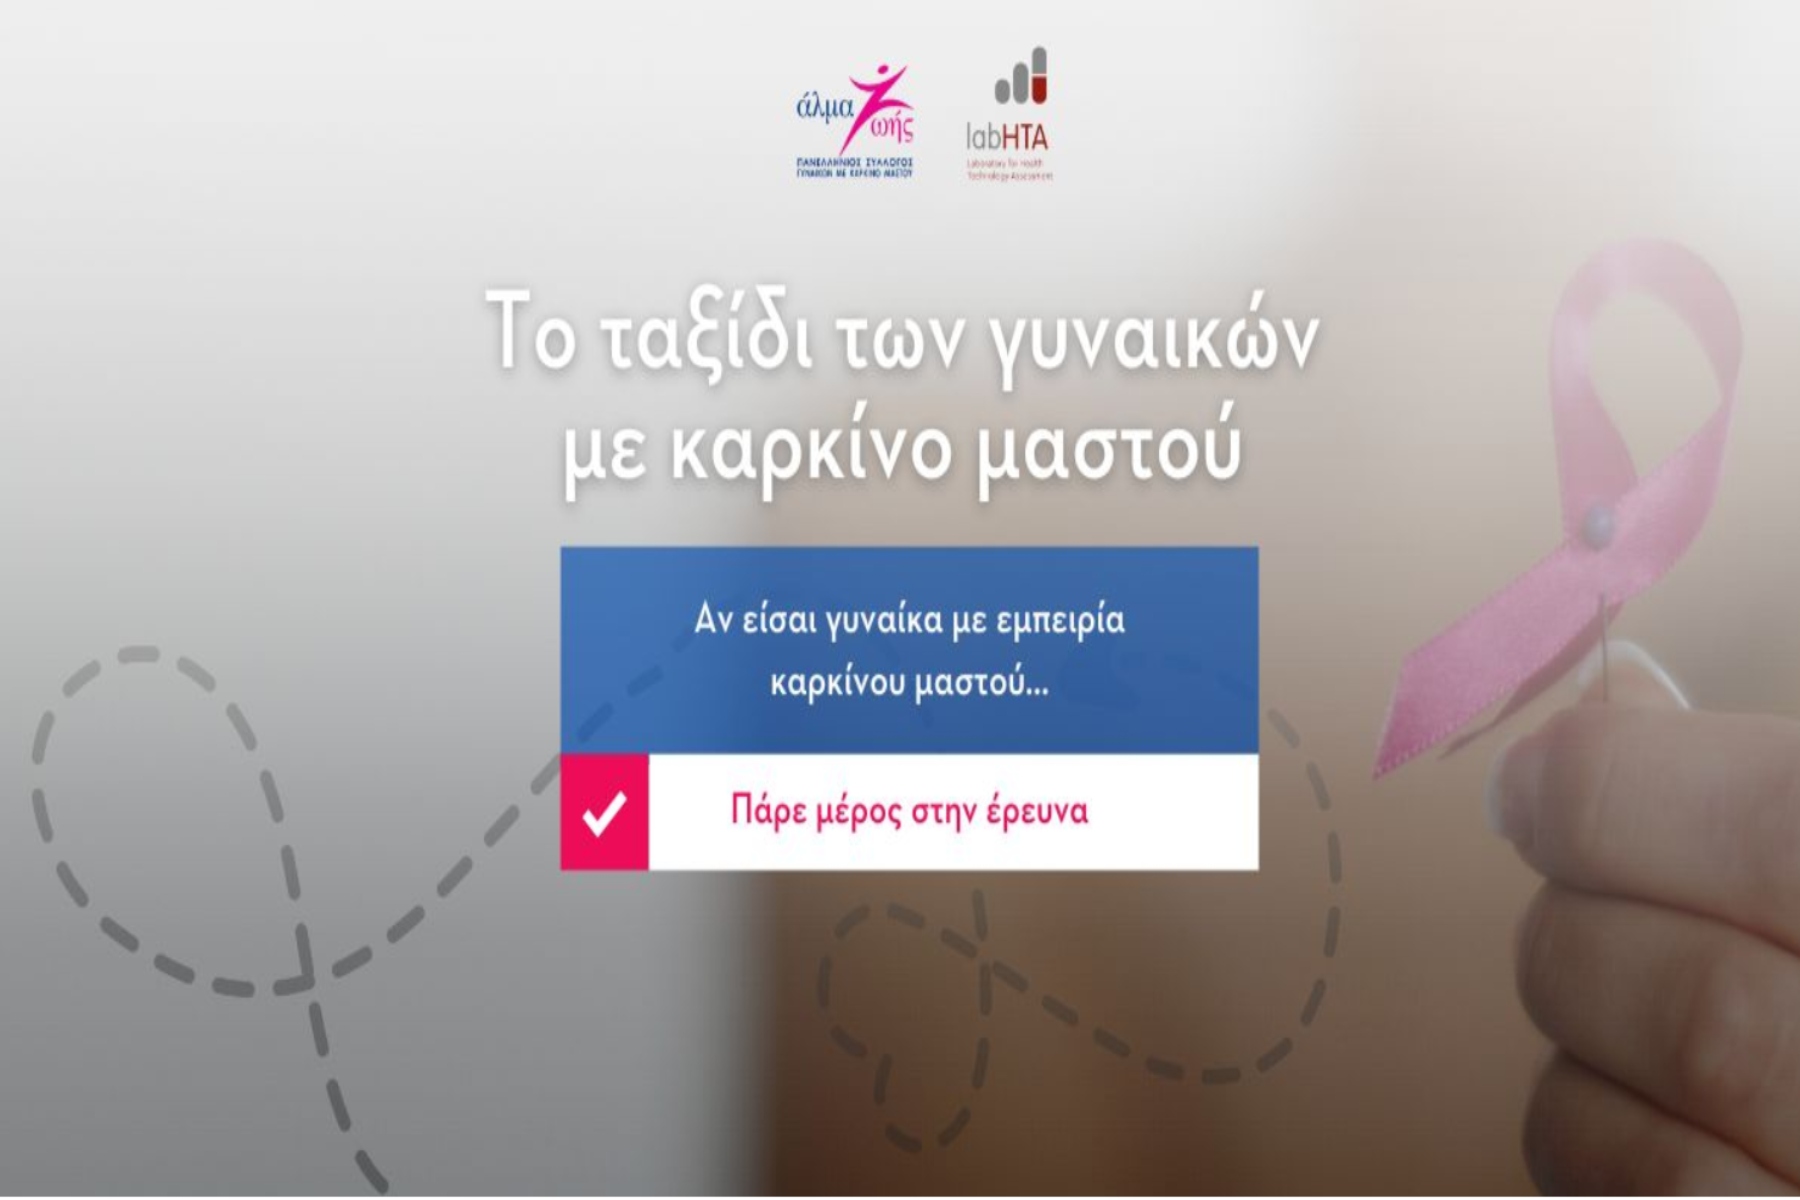 Άλμα ζωής: Έρευνα σε σχέση με το ταξίδι των ασθενών με καρκίνο του μαστού στην Ελλάδα,10 χρόνια μετά